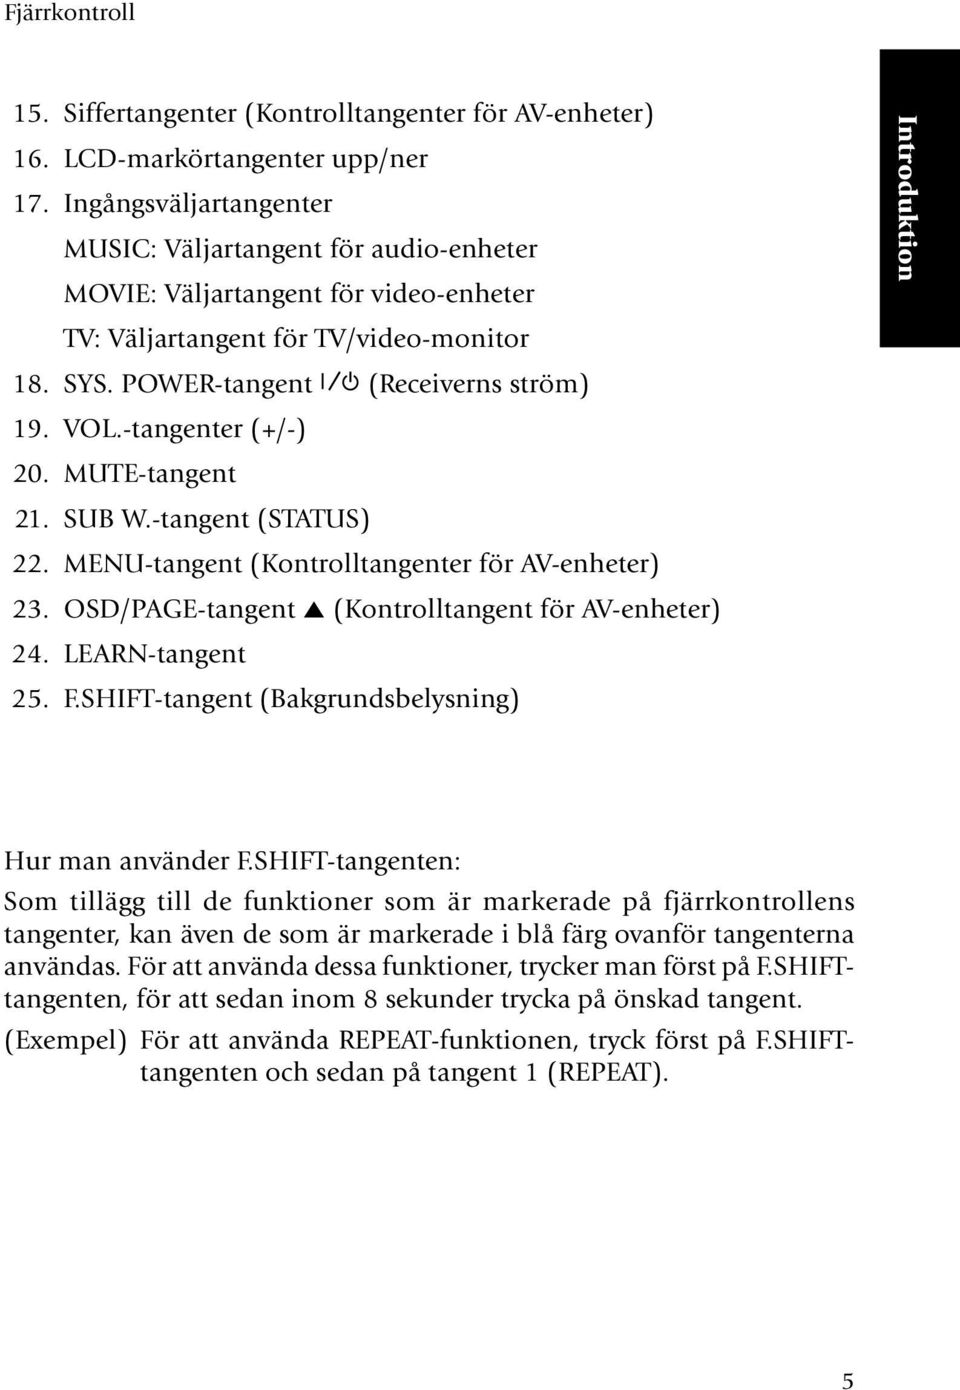 -tangenter (+/-) 20. MUTE-tangent 21. SUB W.-tangent (STATUS) 22. MENU-tangent (Kontrolltangenter för AV-enheter) 23. OSD/PAGE-tangent 5 (Kontrolltangent för AV-enheter) 24. LEARN-tangent 25. F.